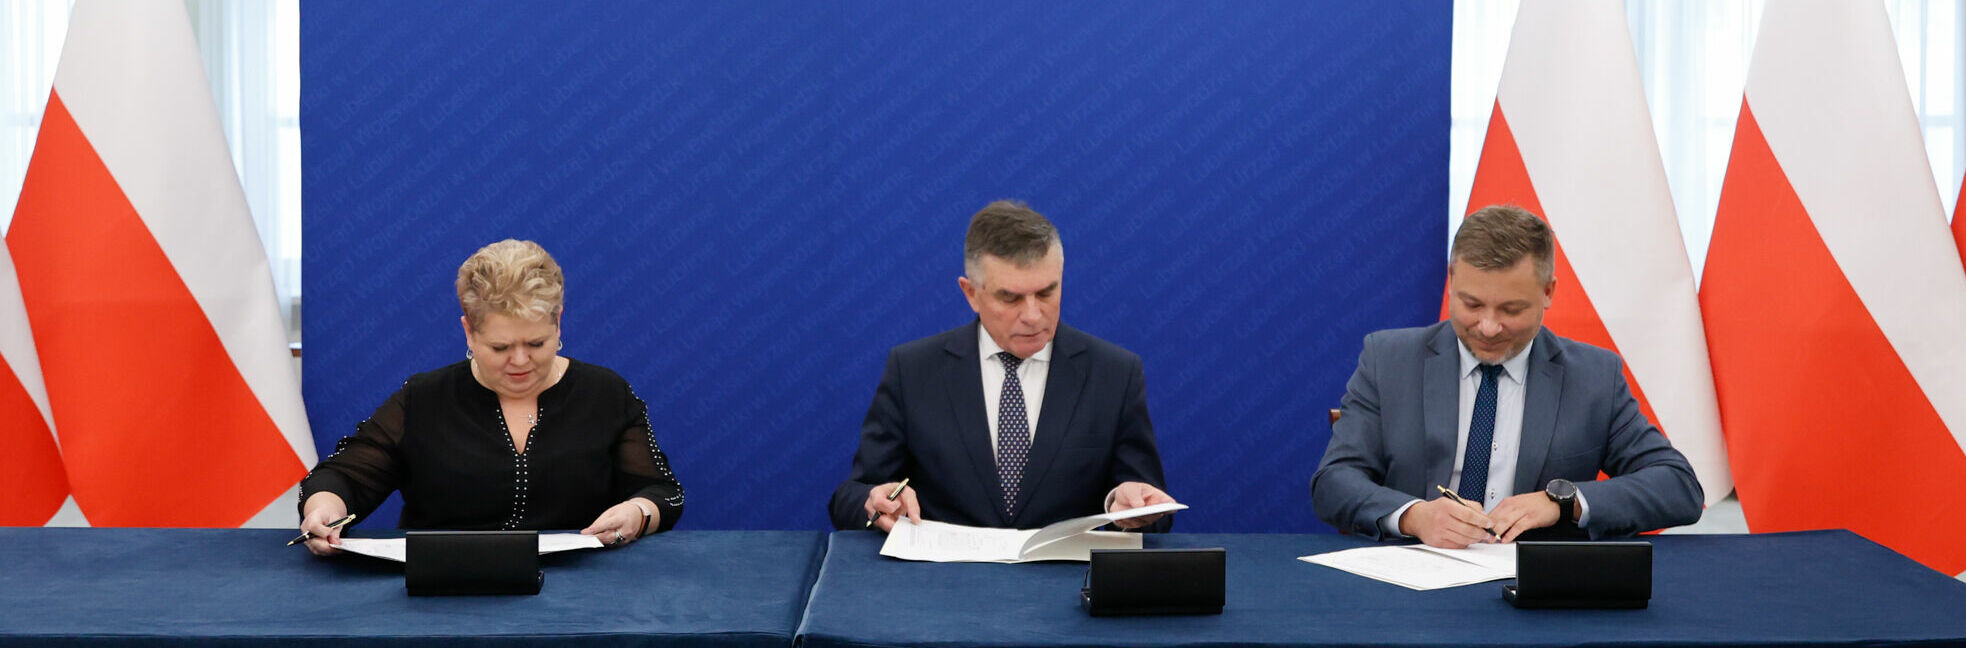 Trzy osoby siedzą przy stole z dokumentami na tle flag Polski oraz niebieskiej ściany z białymi pasami, podpisując oficjalne dokumenty.